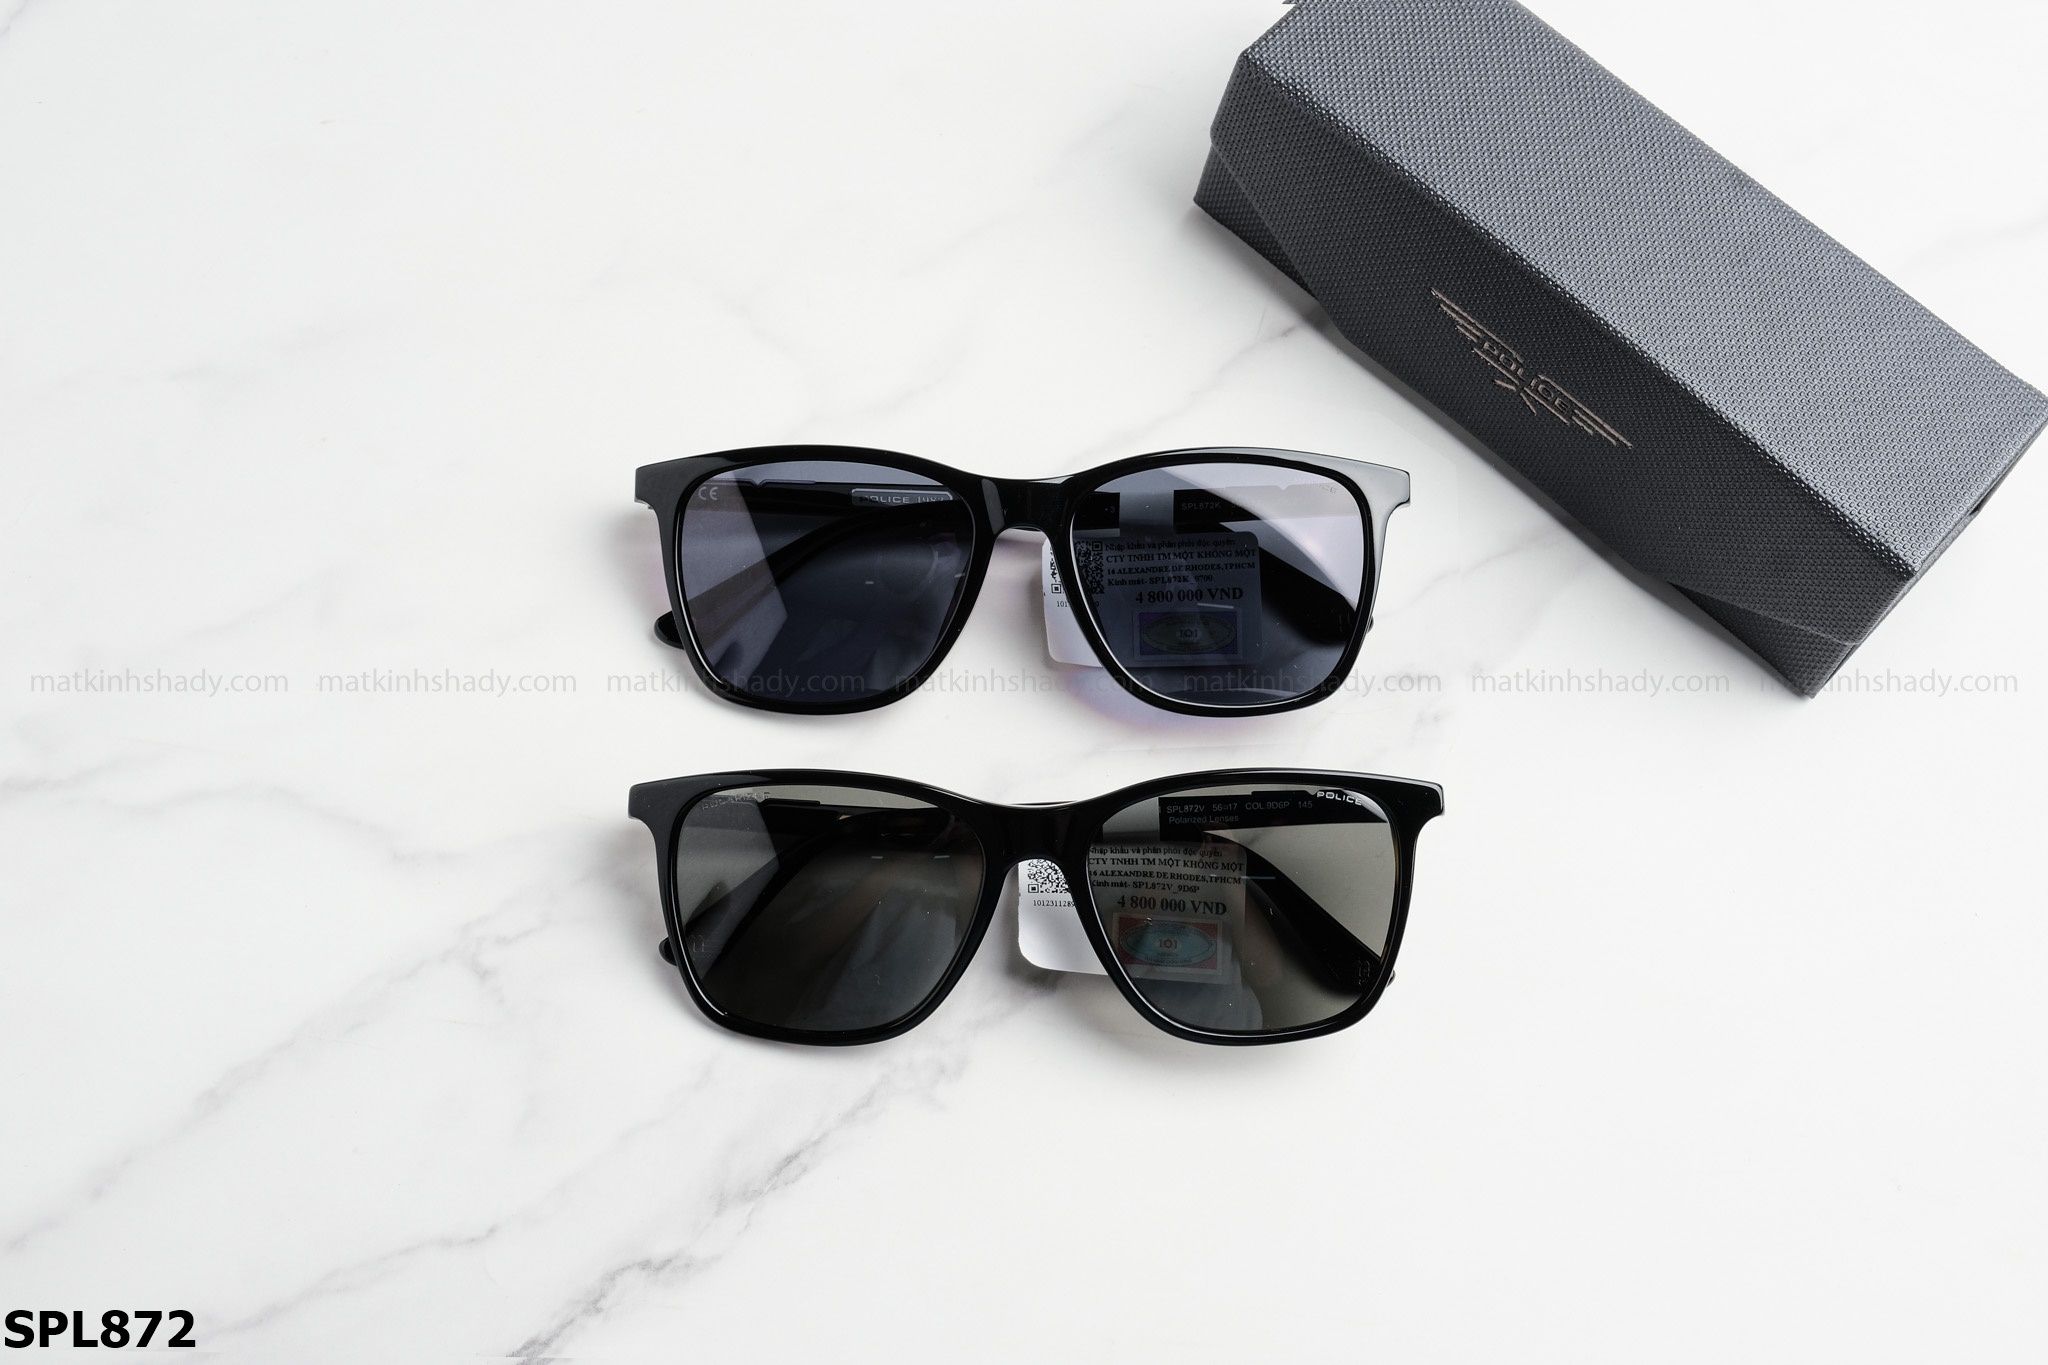  Police Eyewear - Sunglasses - SPL872 